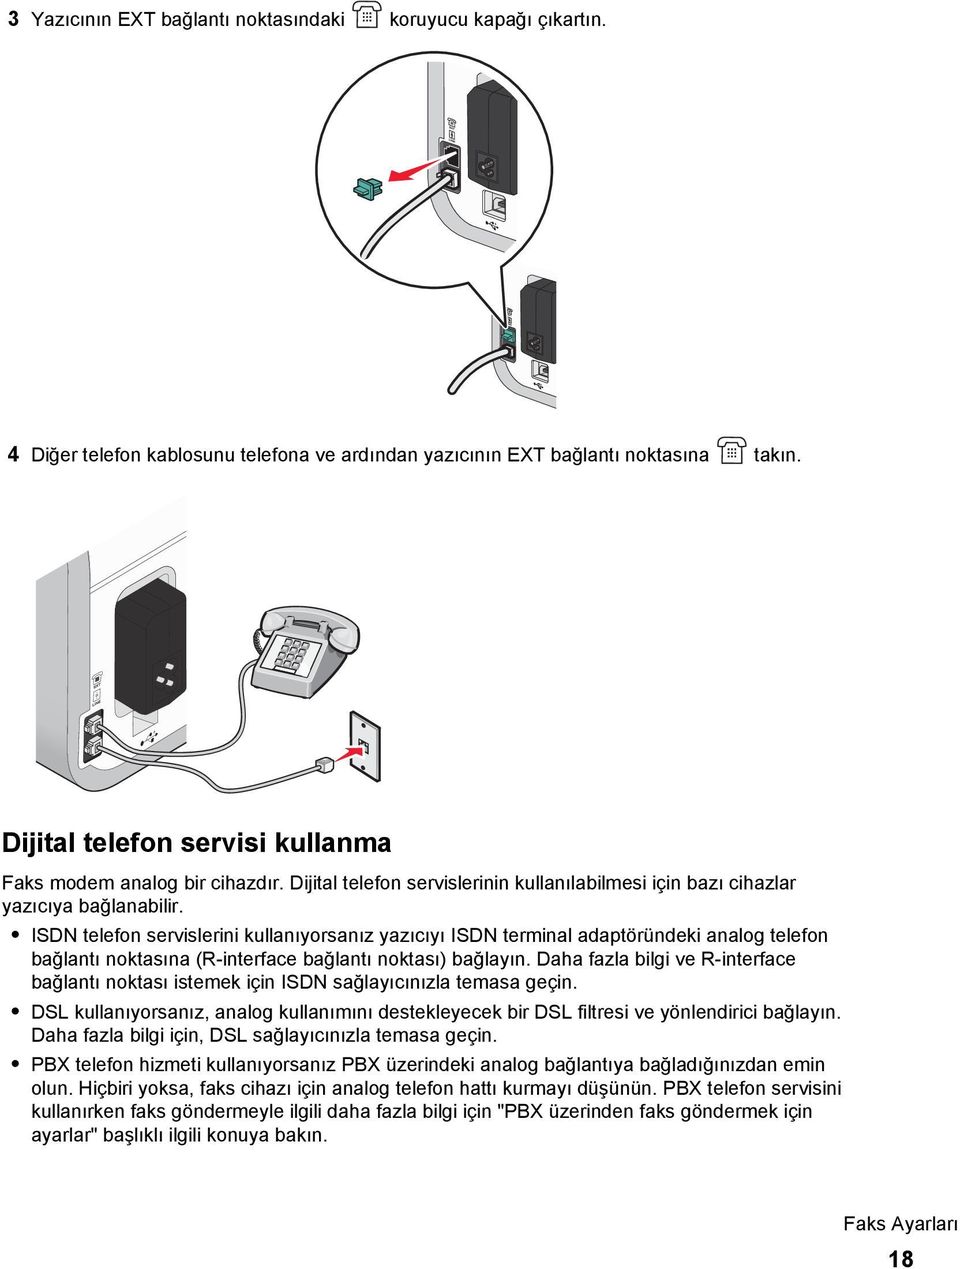 ISDN telefon servislerini kullanıyorsanız yazıcıyı ISDN terminal adaptöründeki analog telefon bağlantı noktasına (R-interface bağlantı noktası) bağlayın.